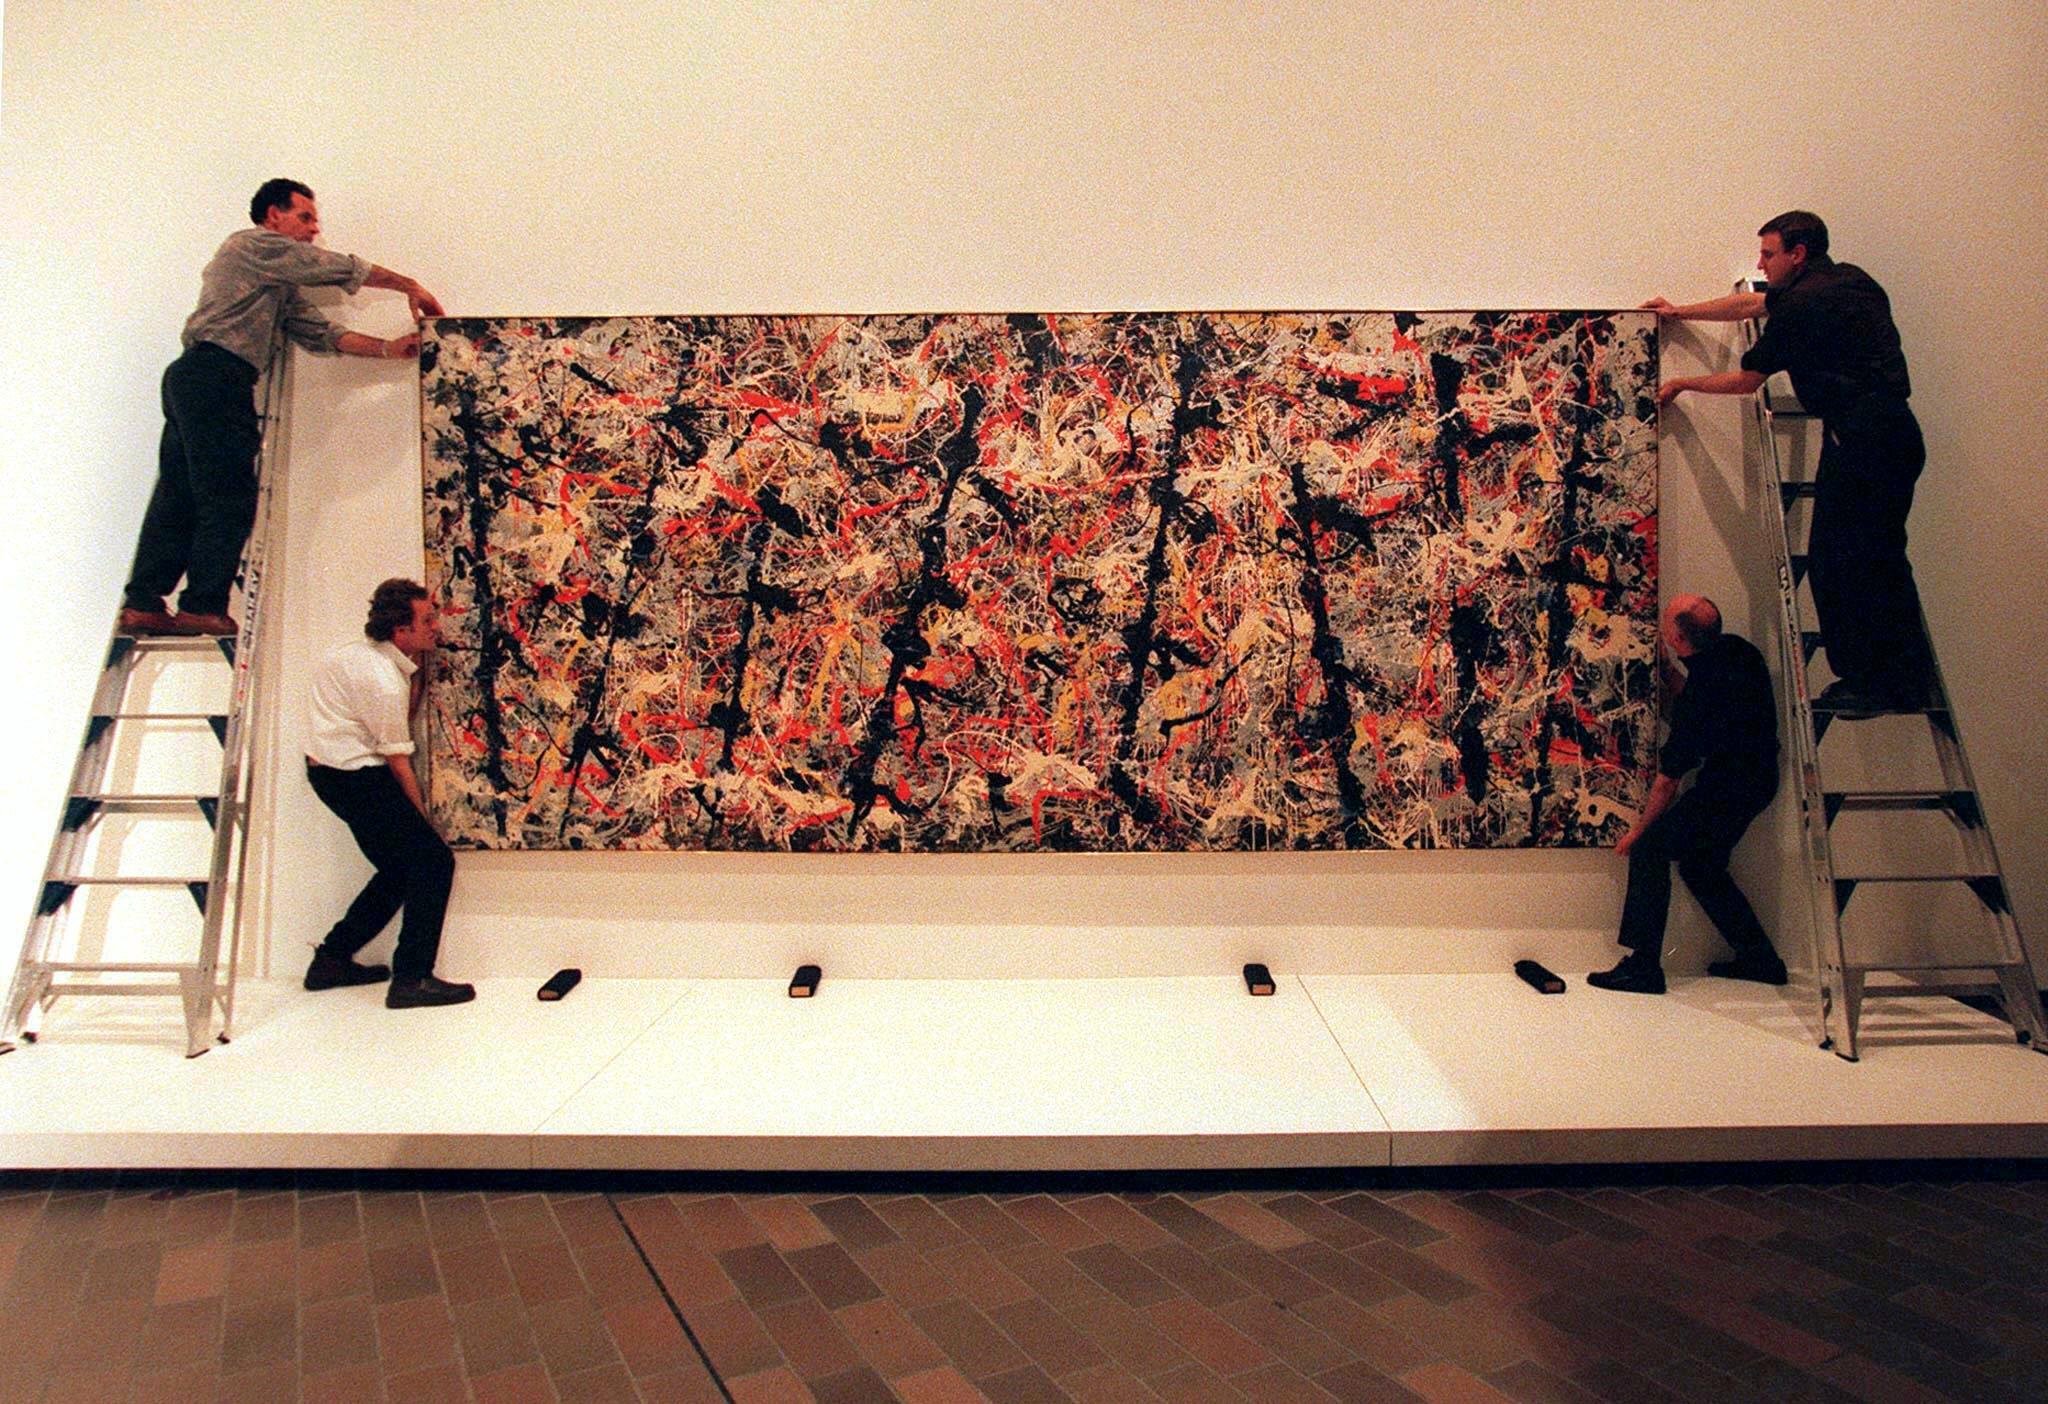 Store formater, slående helhetsvirkning og «over-det-hele»-organisering av billedfeltet sto sentralt i den abstrakte ekspresjonismen slik den ble utviklet av New York-skolens malere. Her er et av Jackson Pollocks berømte «drip-paintings»; Blue Poles fra 1952.